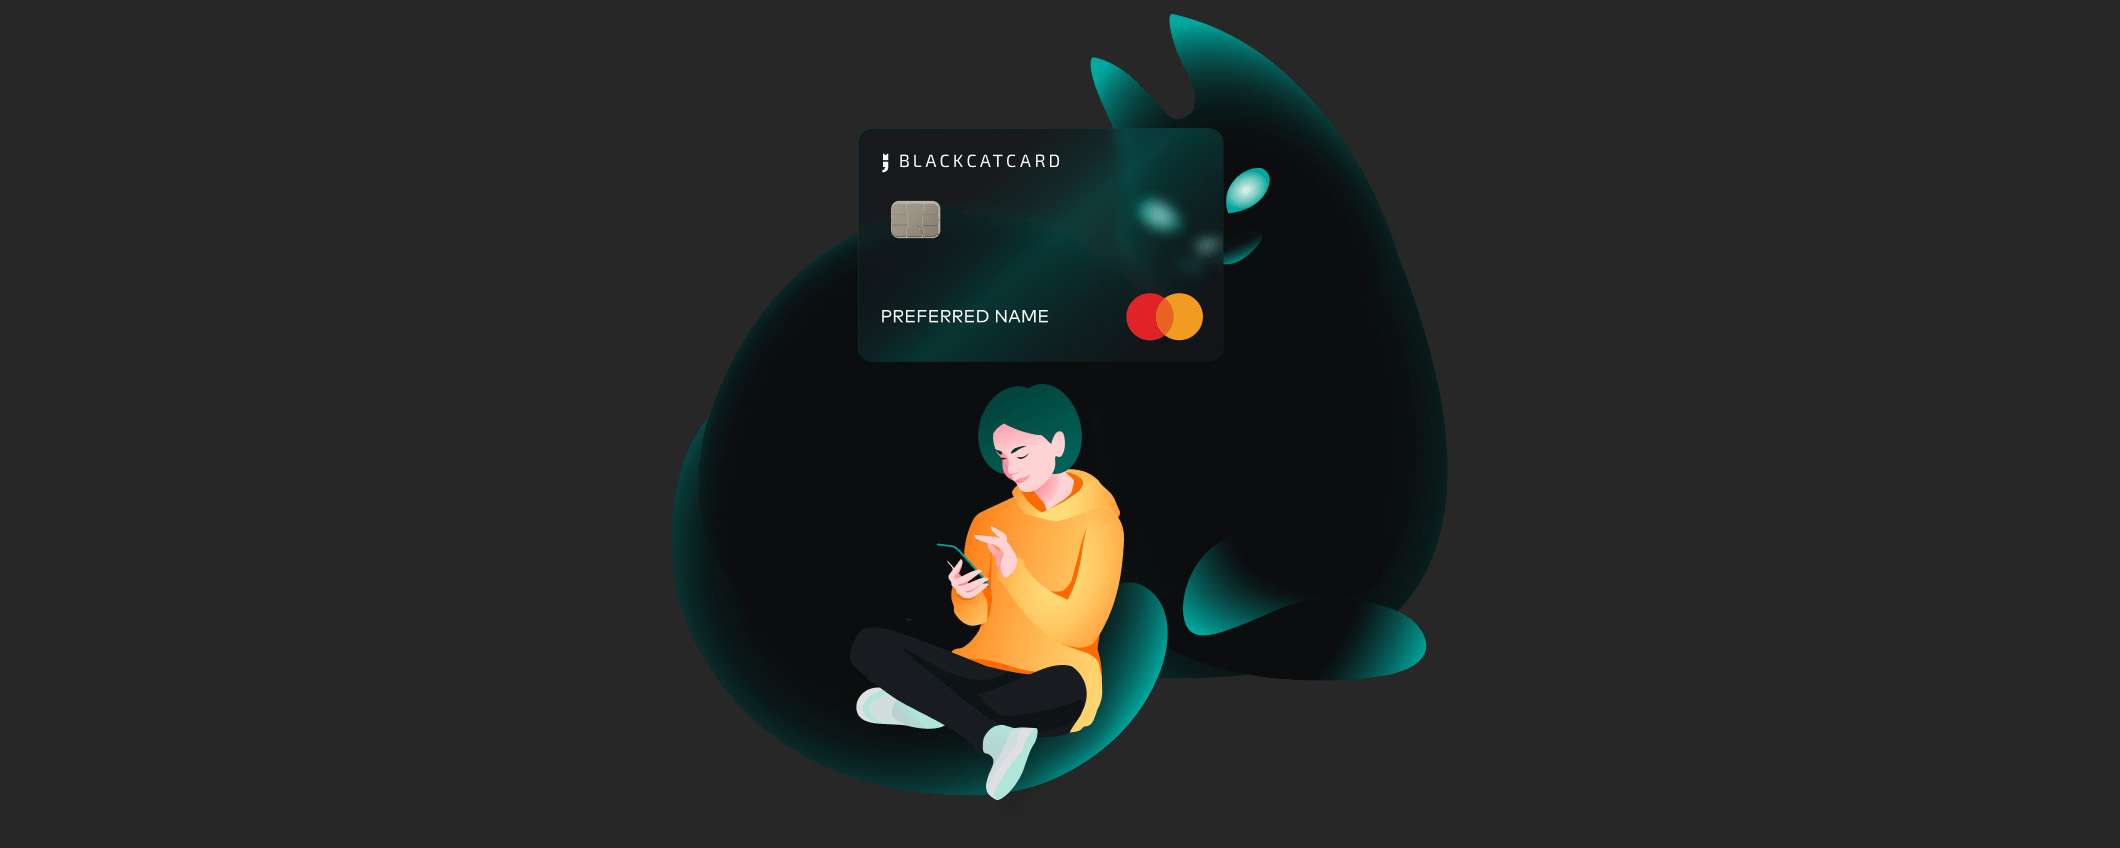 Risparmia ora con Blackcatcard: richiedi ora il conto con prepagata